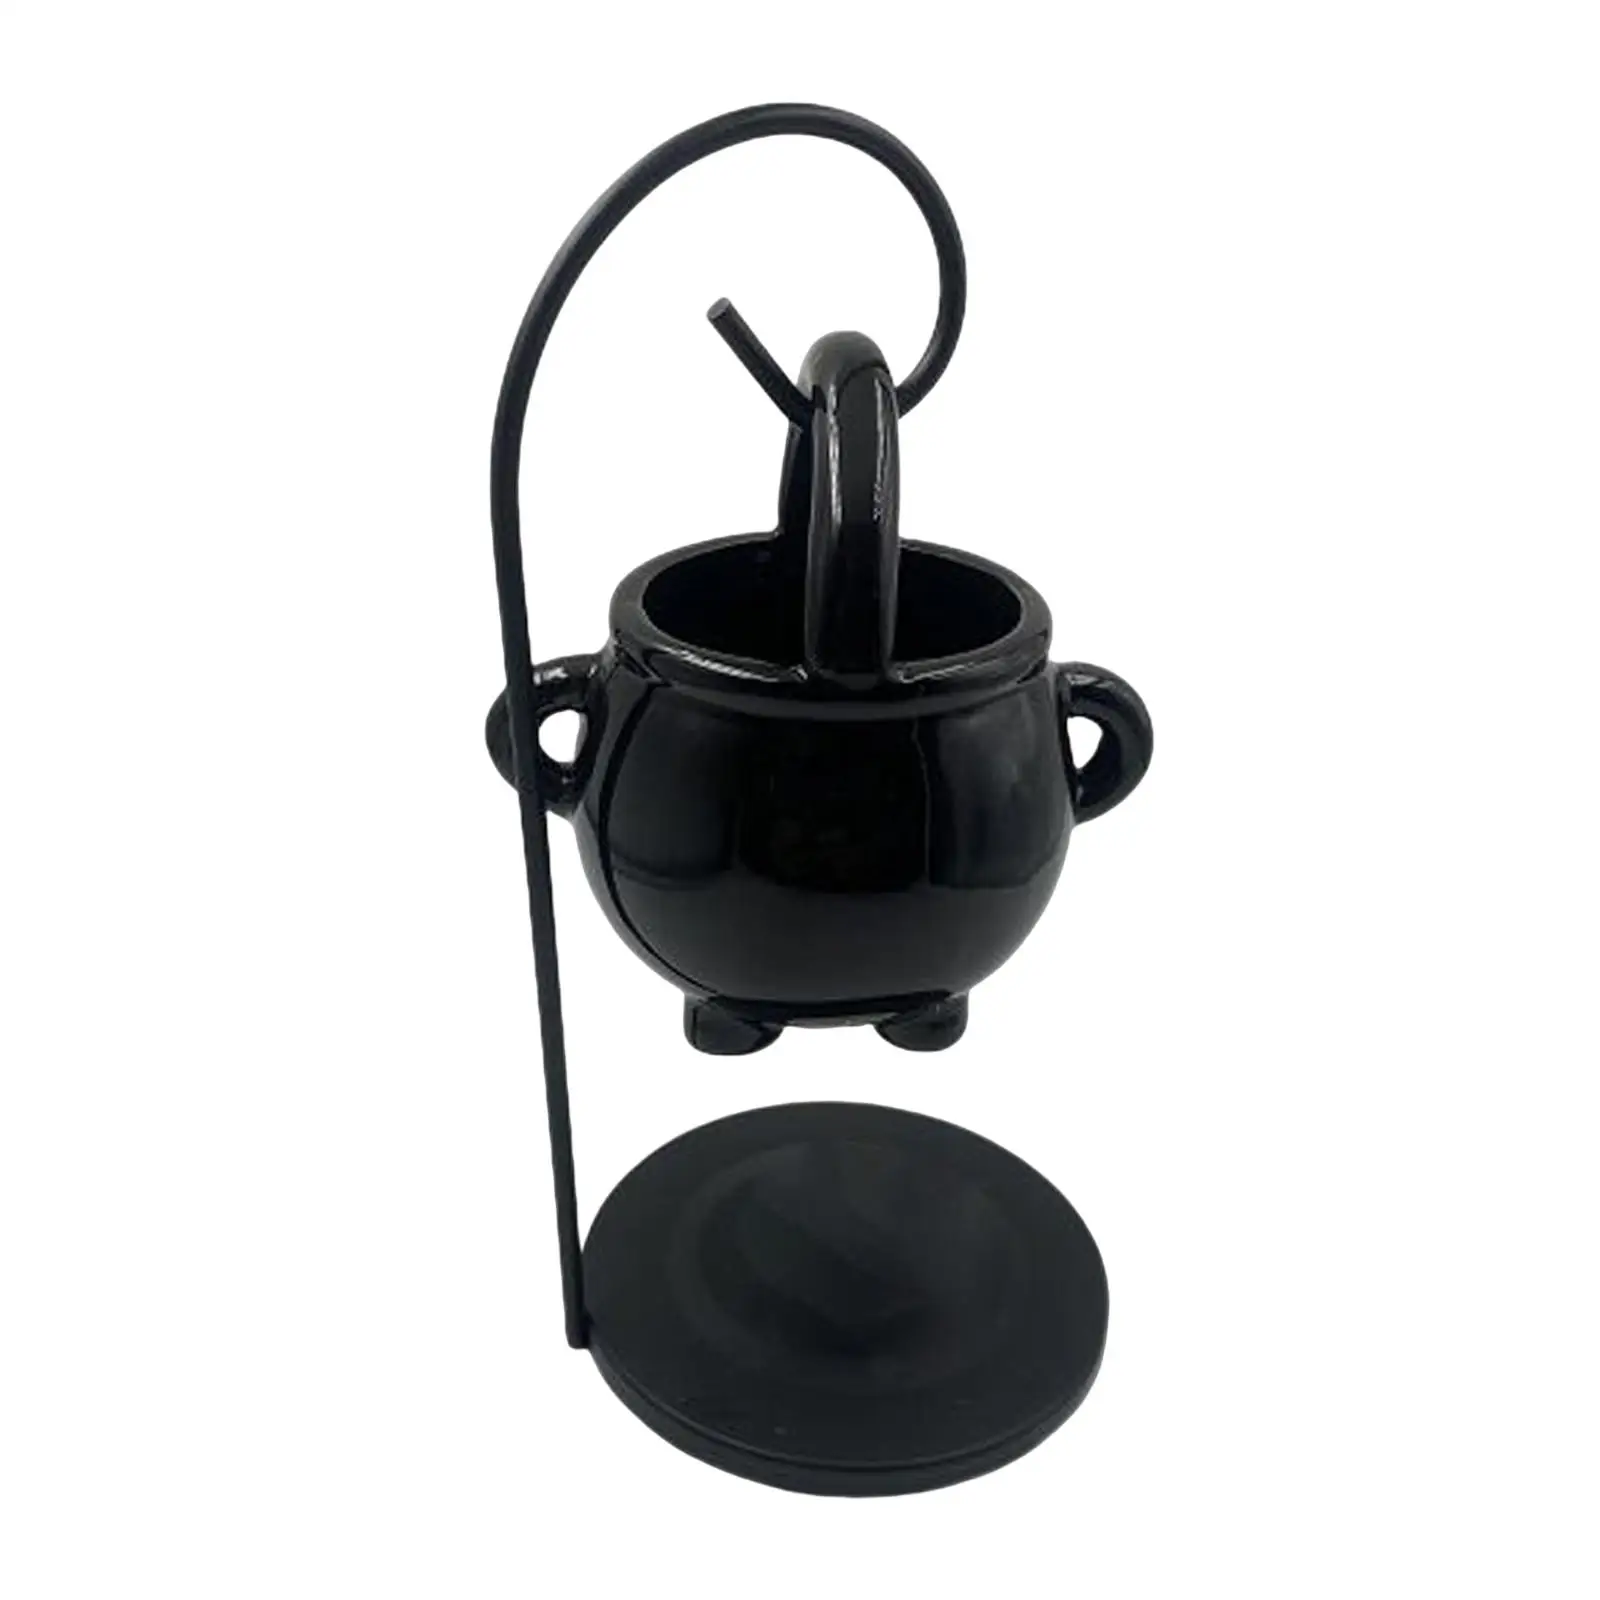 Ceramic Tealight Candles Holder Melt Furnace Warmer Gift Essential Oil Burner for Home Decoration Living Room Bedroom